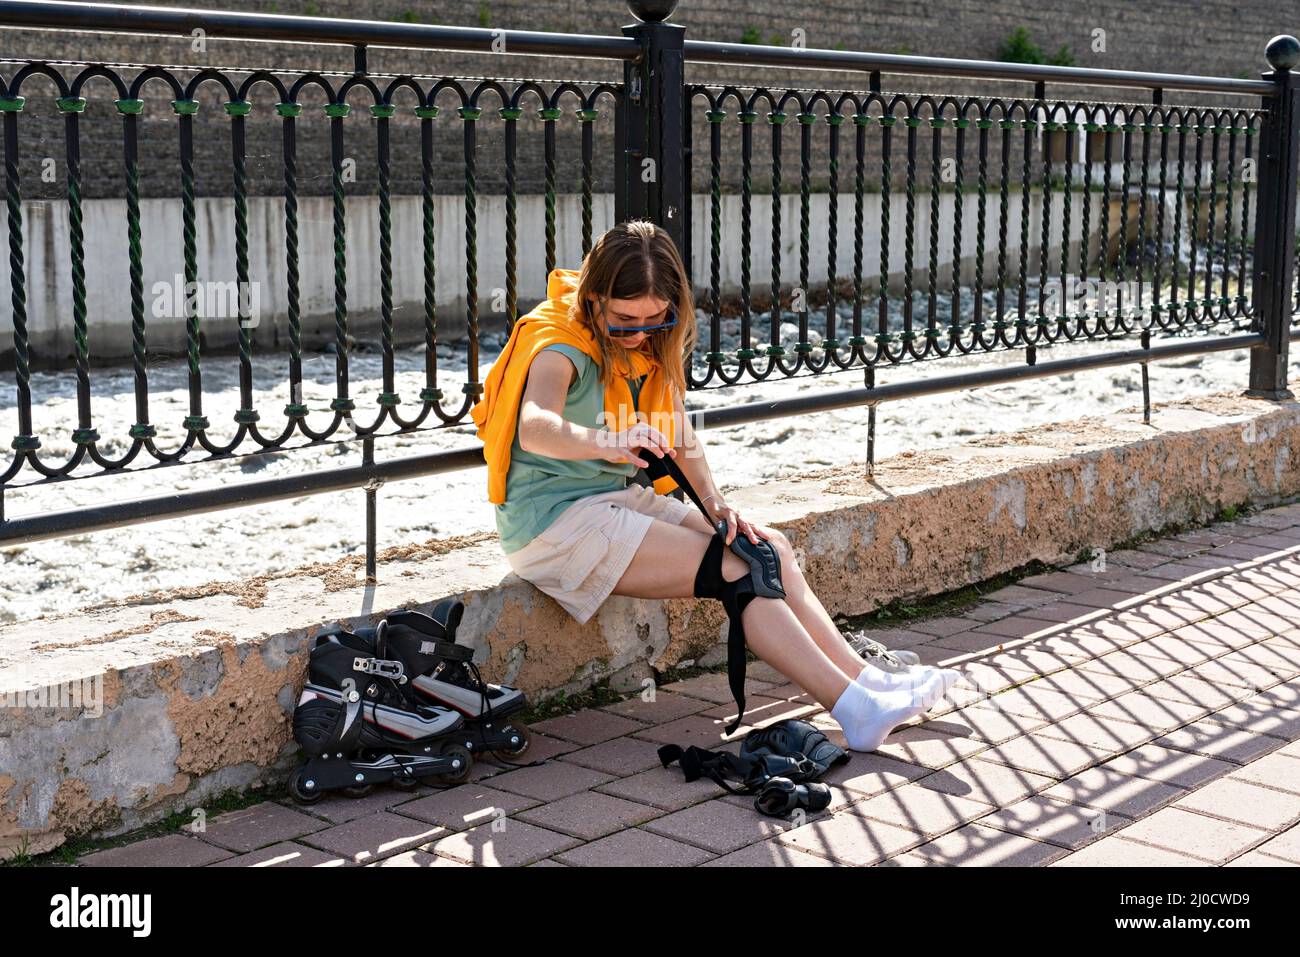 Junge Frau im gelben Hoodie, die Schutzausrüstung anlegt, bevor sie am Ufer Rollschuhlaufen kann aktiver Lebensstil, Outdoor-Aktivitäten, Rollschuhlaufen Stockfoto